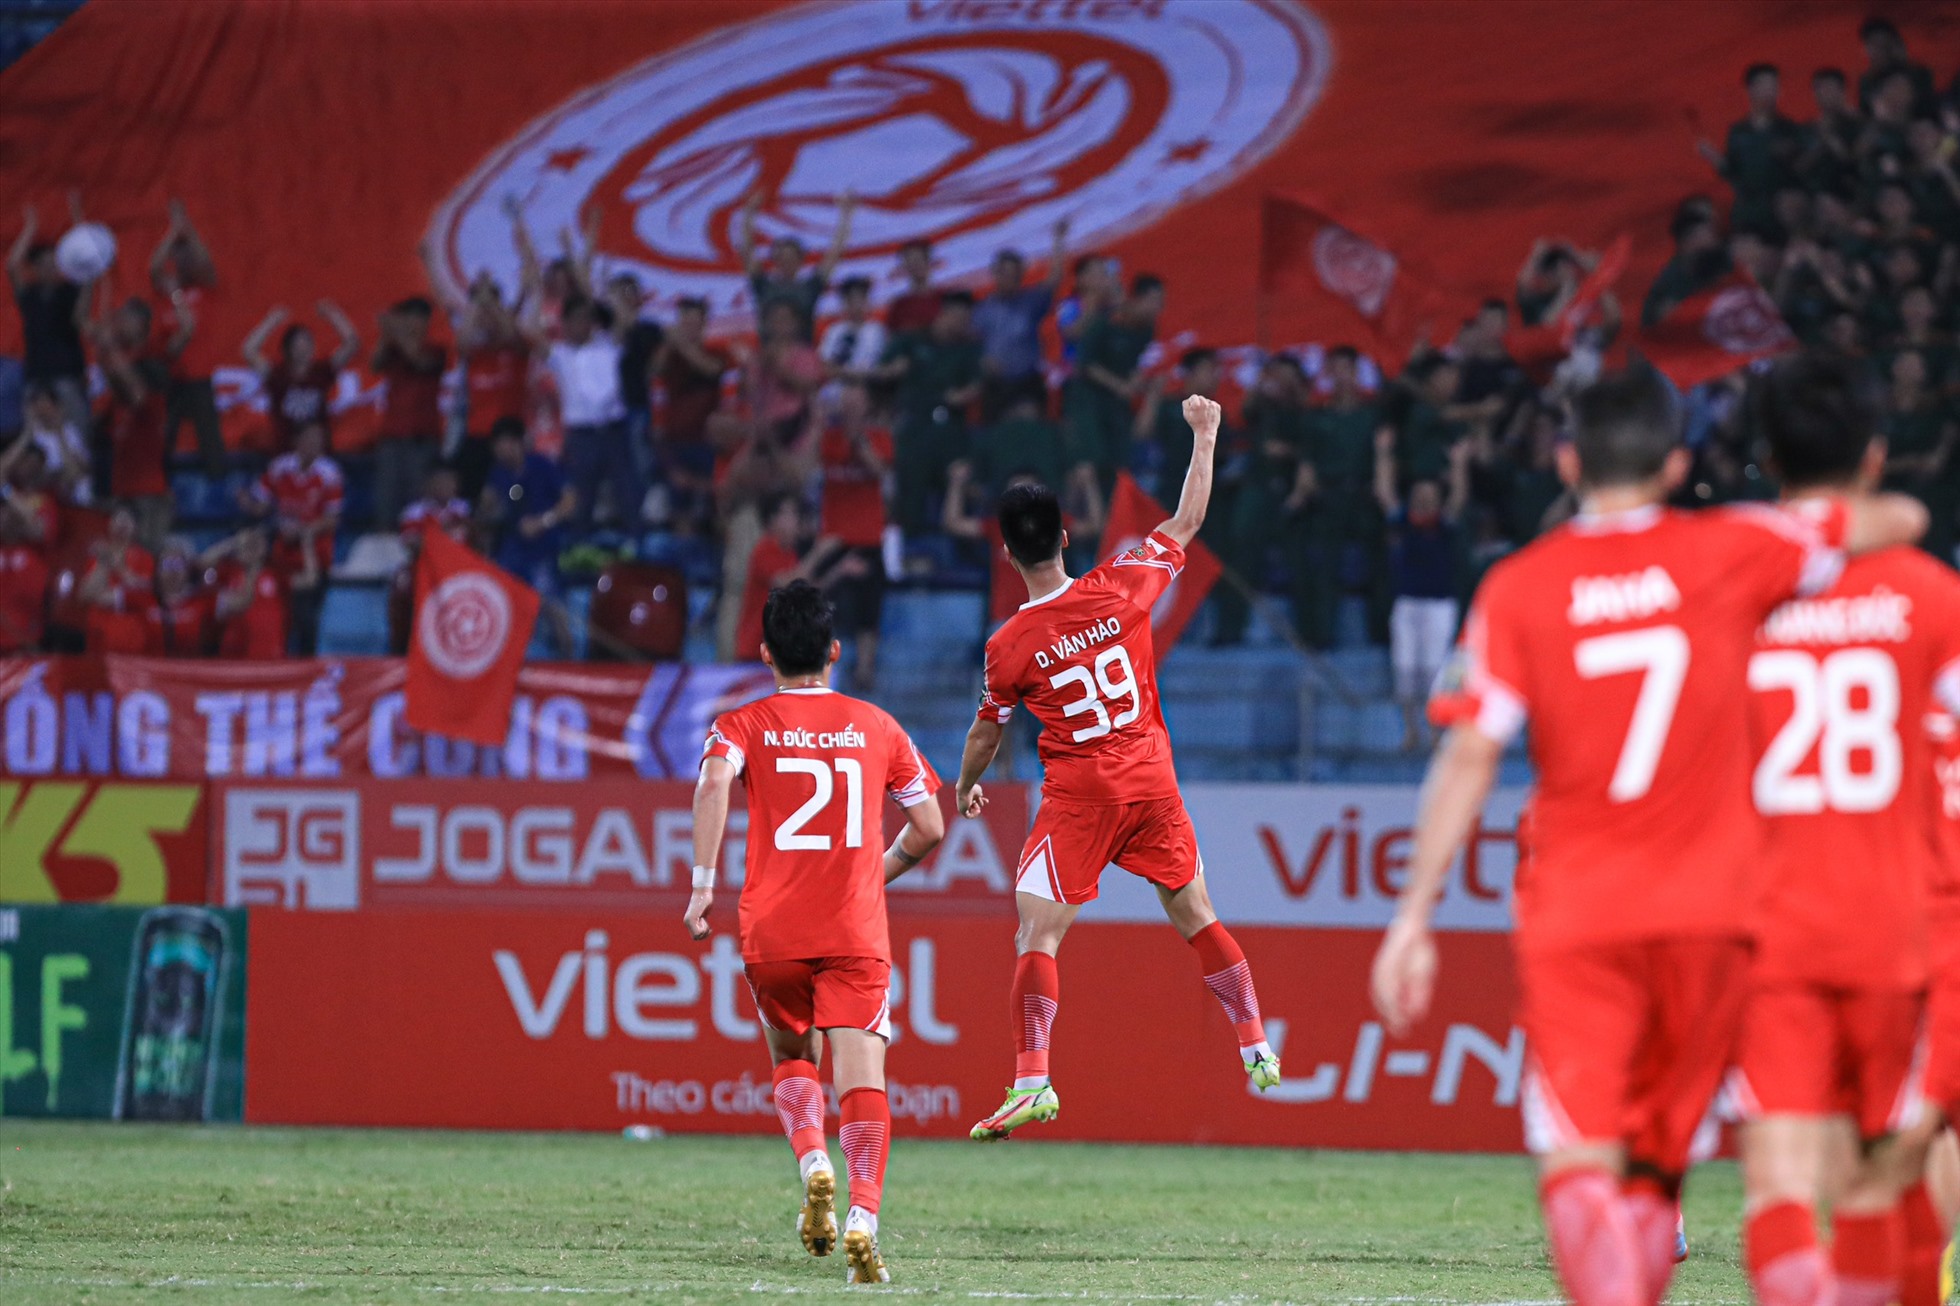 Viettel giành chiến thắng chung cuộc với tỉ số 3-0 trước Sông Lam Nghệ An. Ảnh: Minh Dân